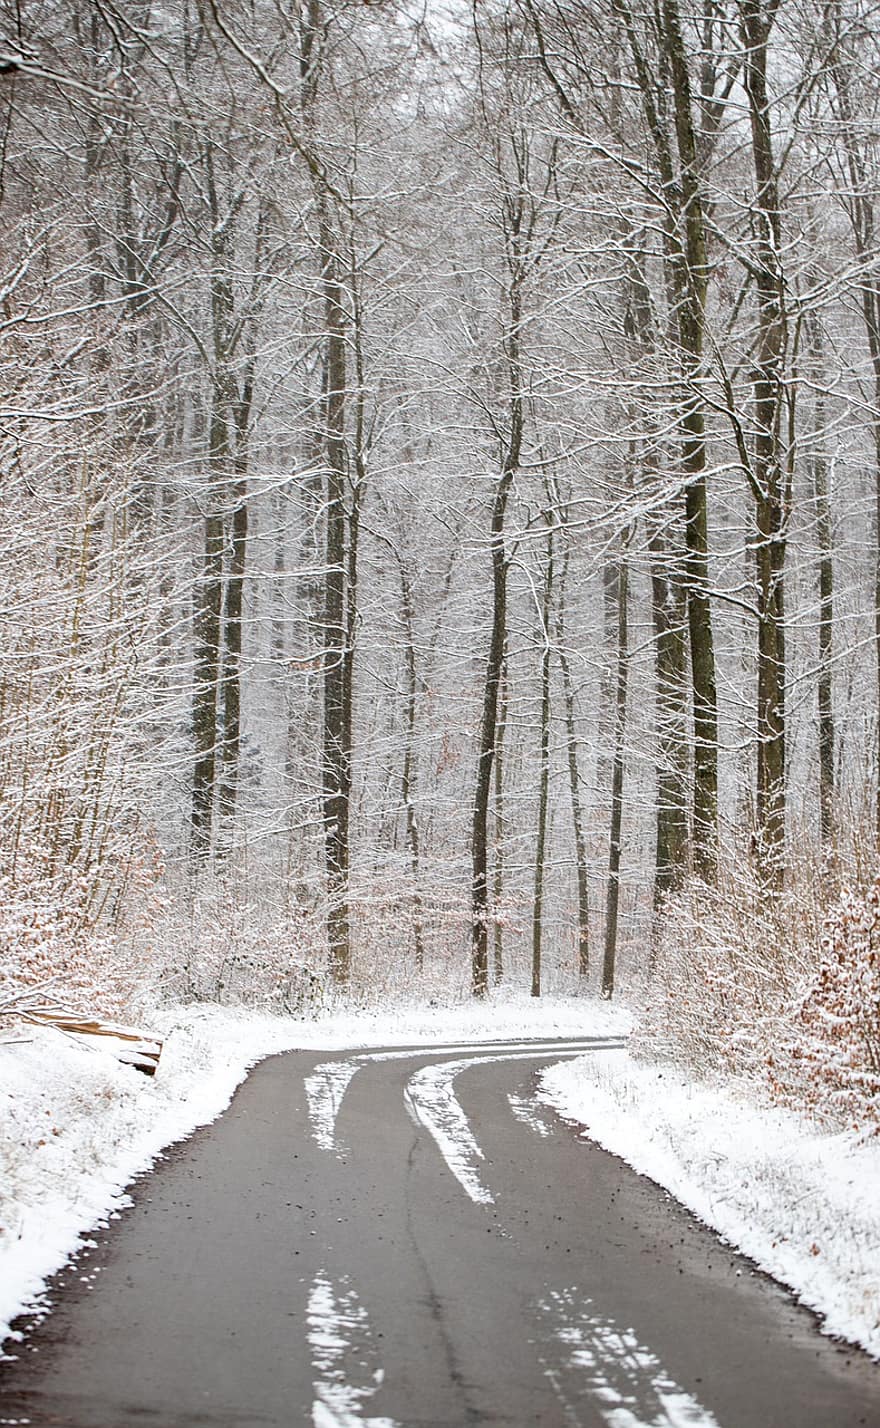 Straße, Bäume, Wald, Schnee, winterlich, Schneeflocken, Eis, gefroren, Frost, kalt, Winter